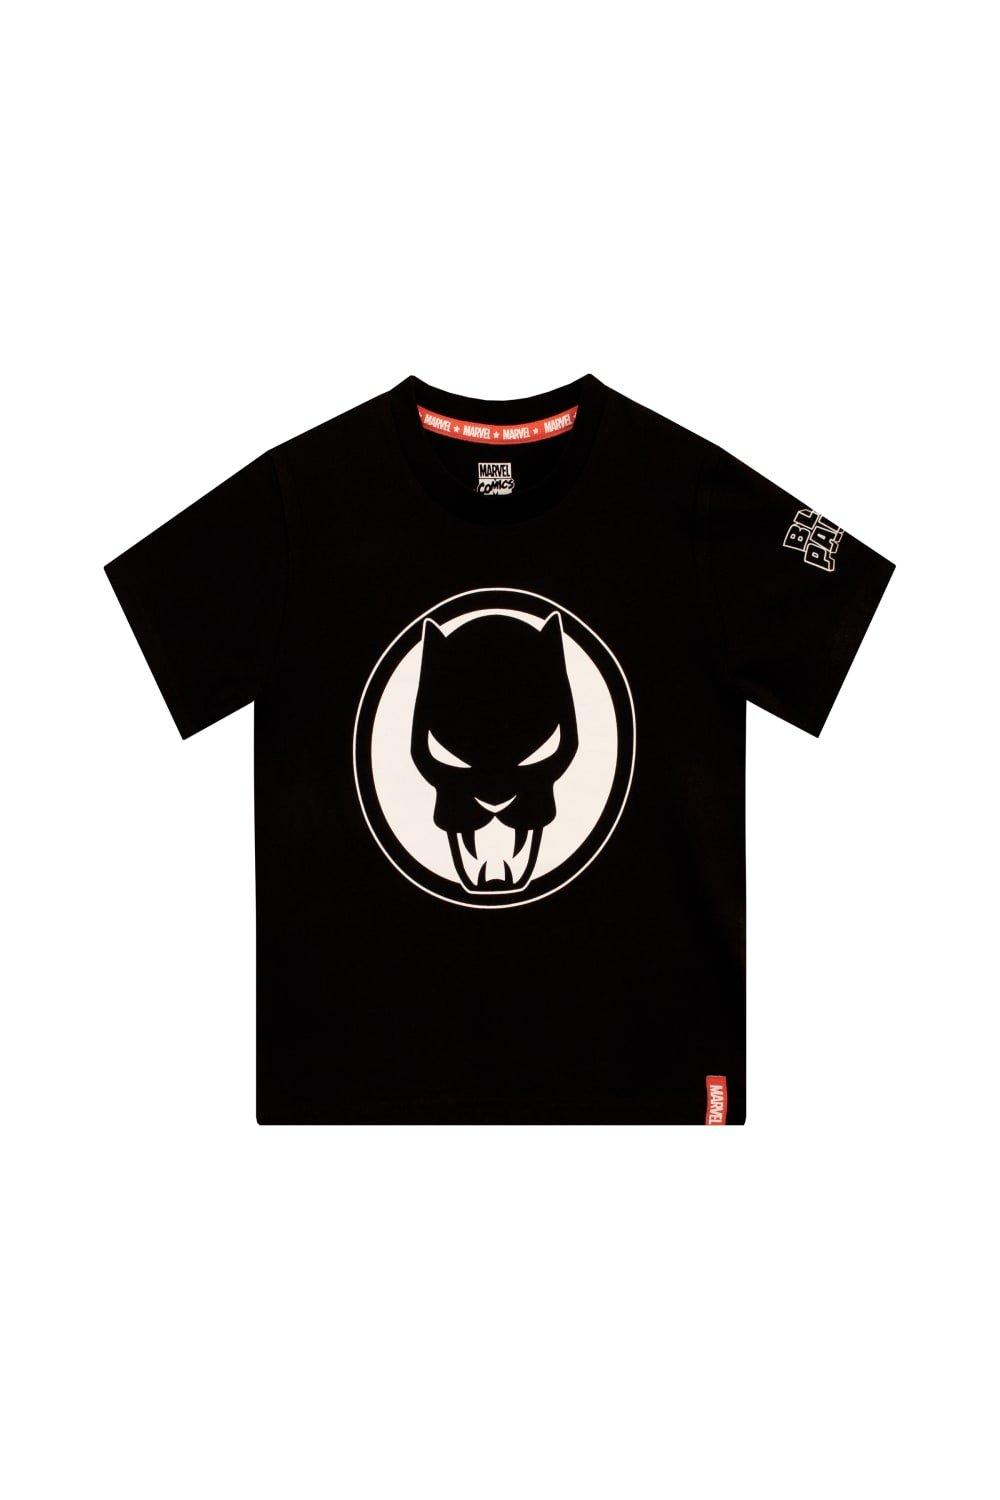 толстовка с капюшоном vlone black panther цвет черный Футболка с логотипом «Черная пантера» Marvel, черный